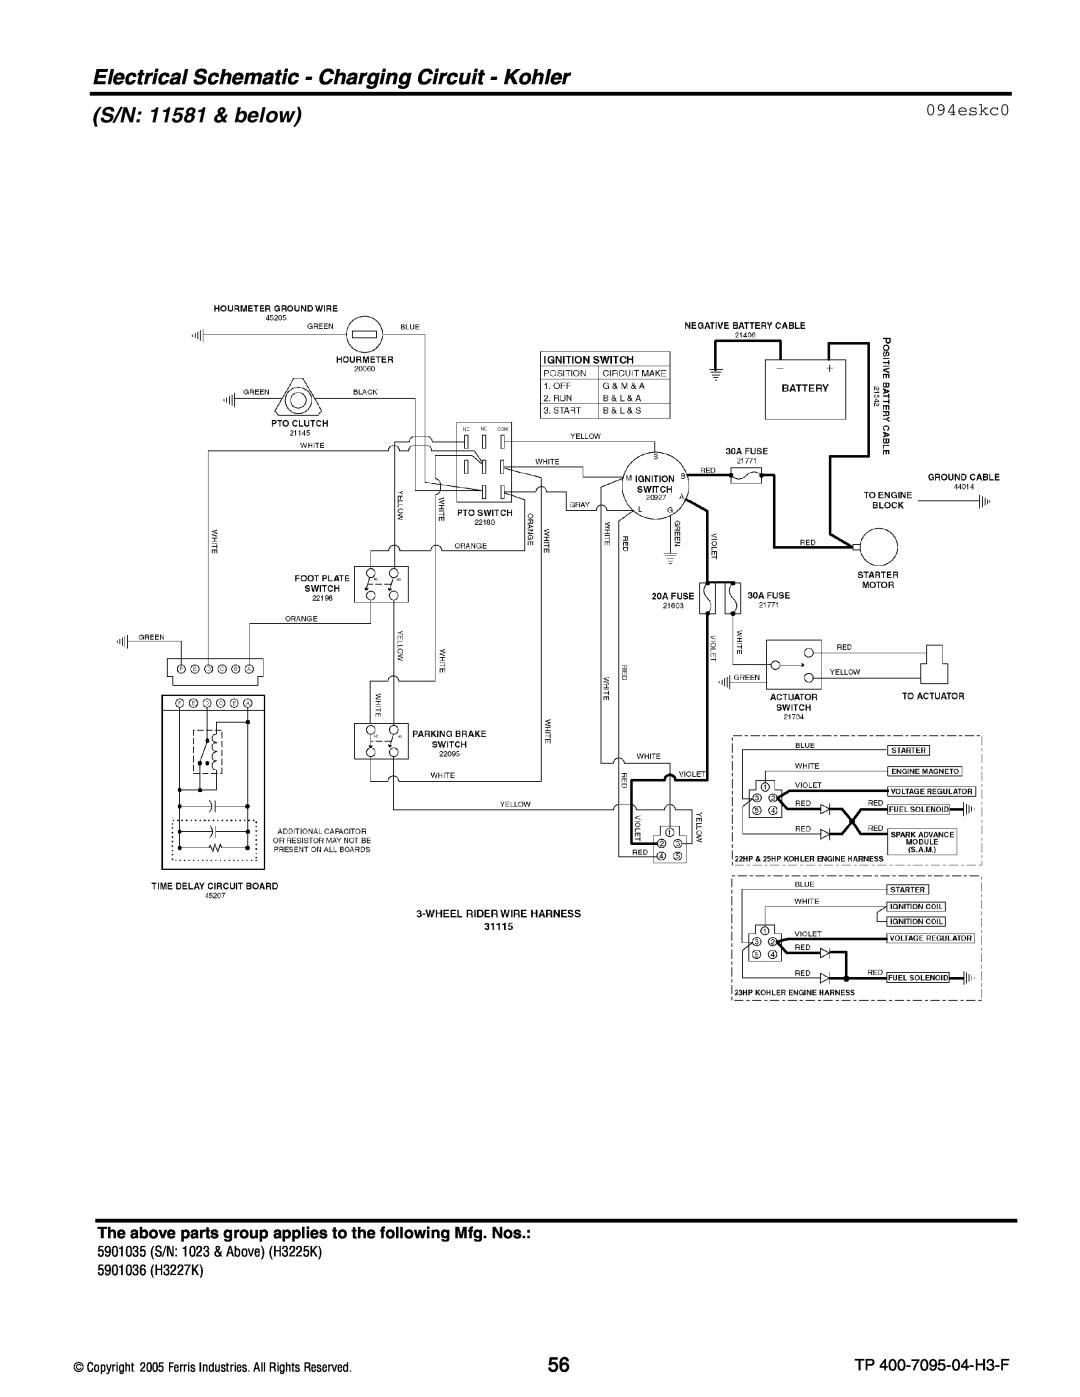 Ferris Industries 5901036, 5901035, 5900228 Electrical Schematic - Charging Circuit - Kohler, S/N: 11581 & below, 094eskc0 